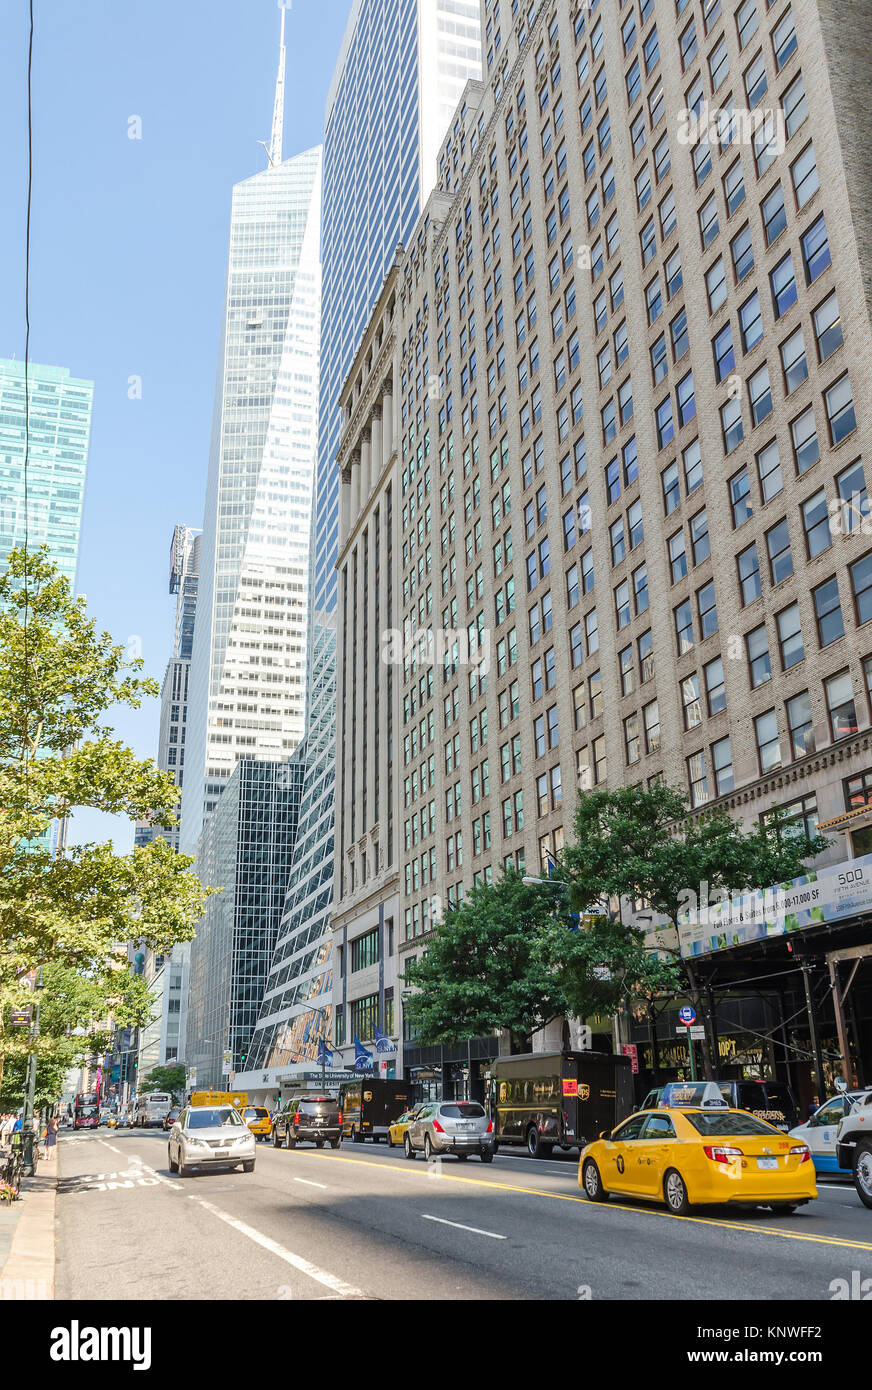 NEW YORK CITY - Lug 22: 42nd Street con il traffico e gli spot pubblicitari sulla luglio 22, 2014 a New York City. 42Nd Street è una delle principali attraversate street noto per Foto Stock